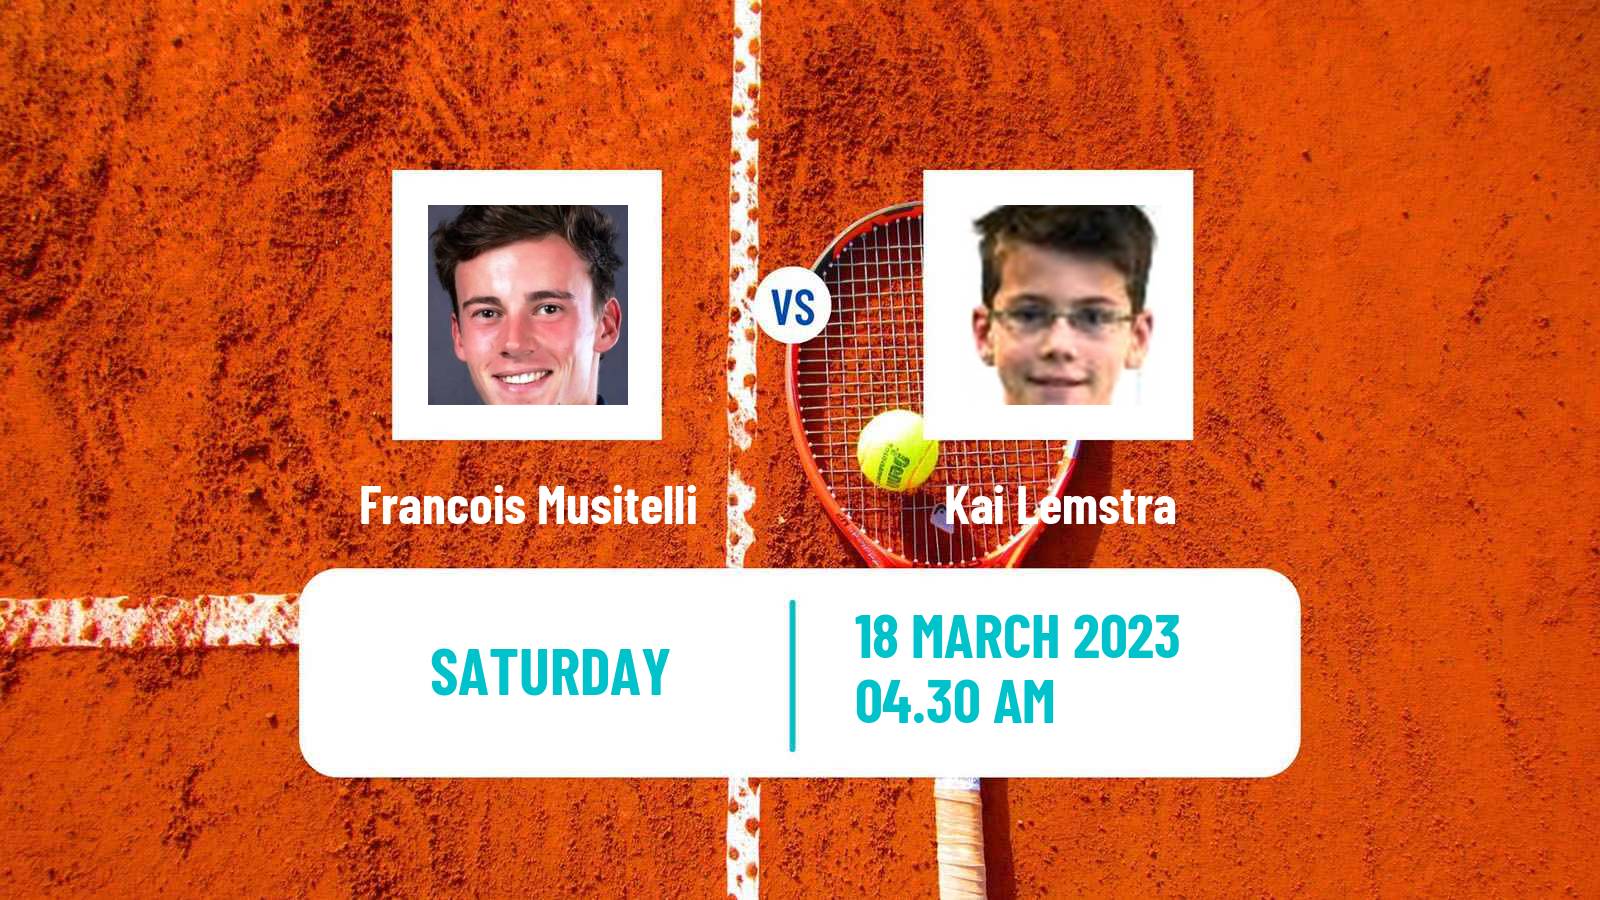 Tennis ITF Tournaments Francois Musitelli - Kai Lemstra